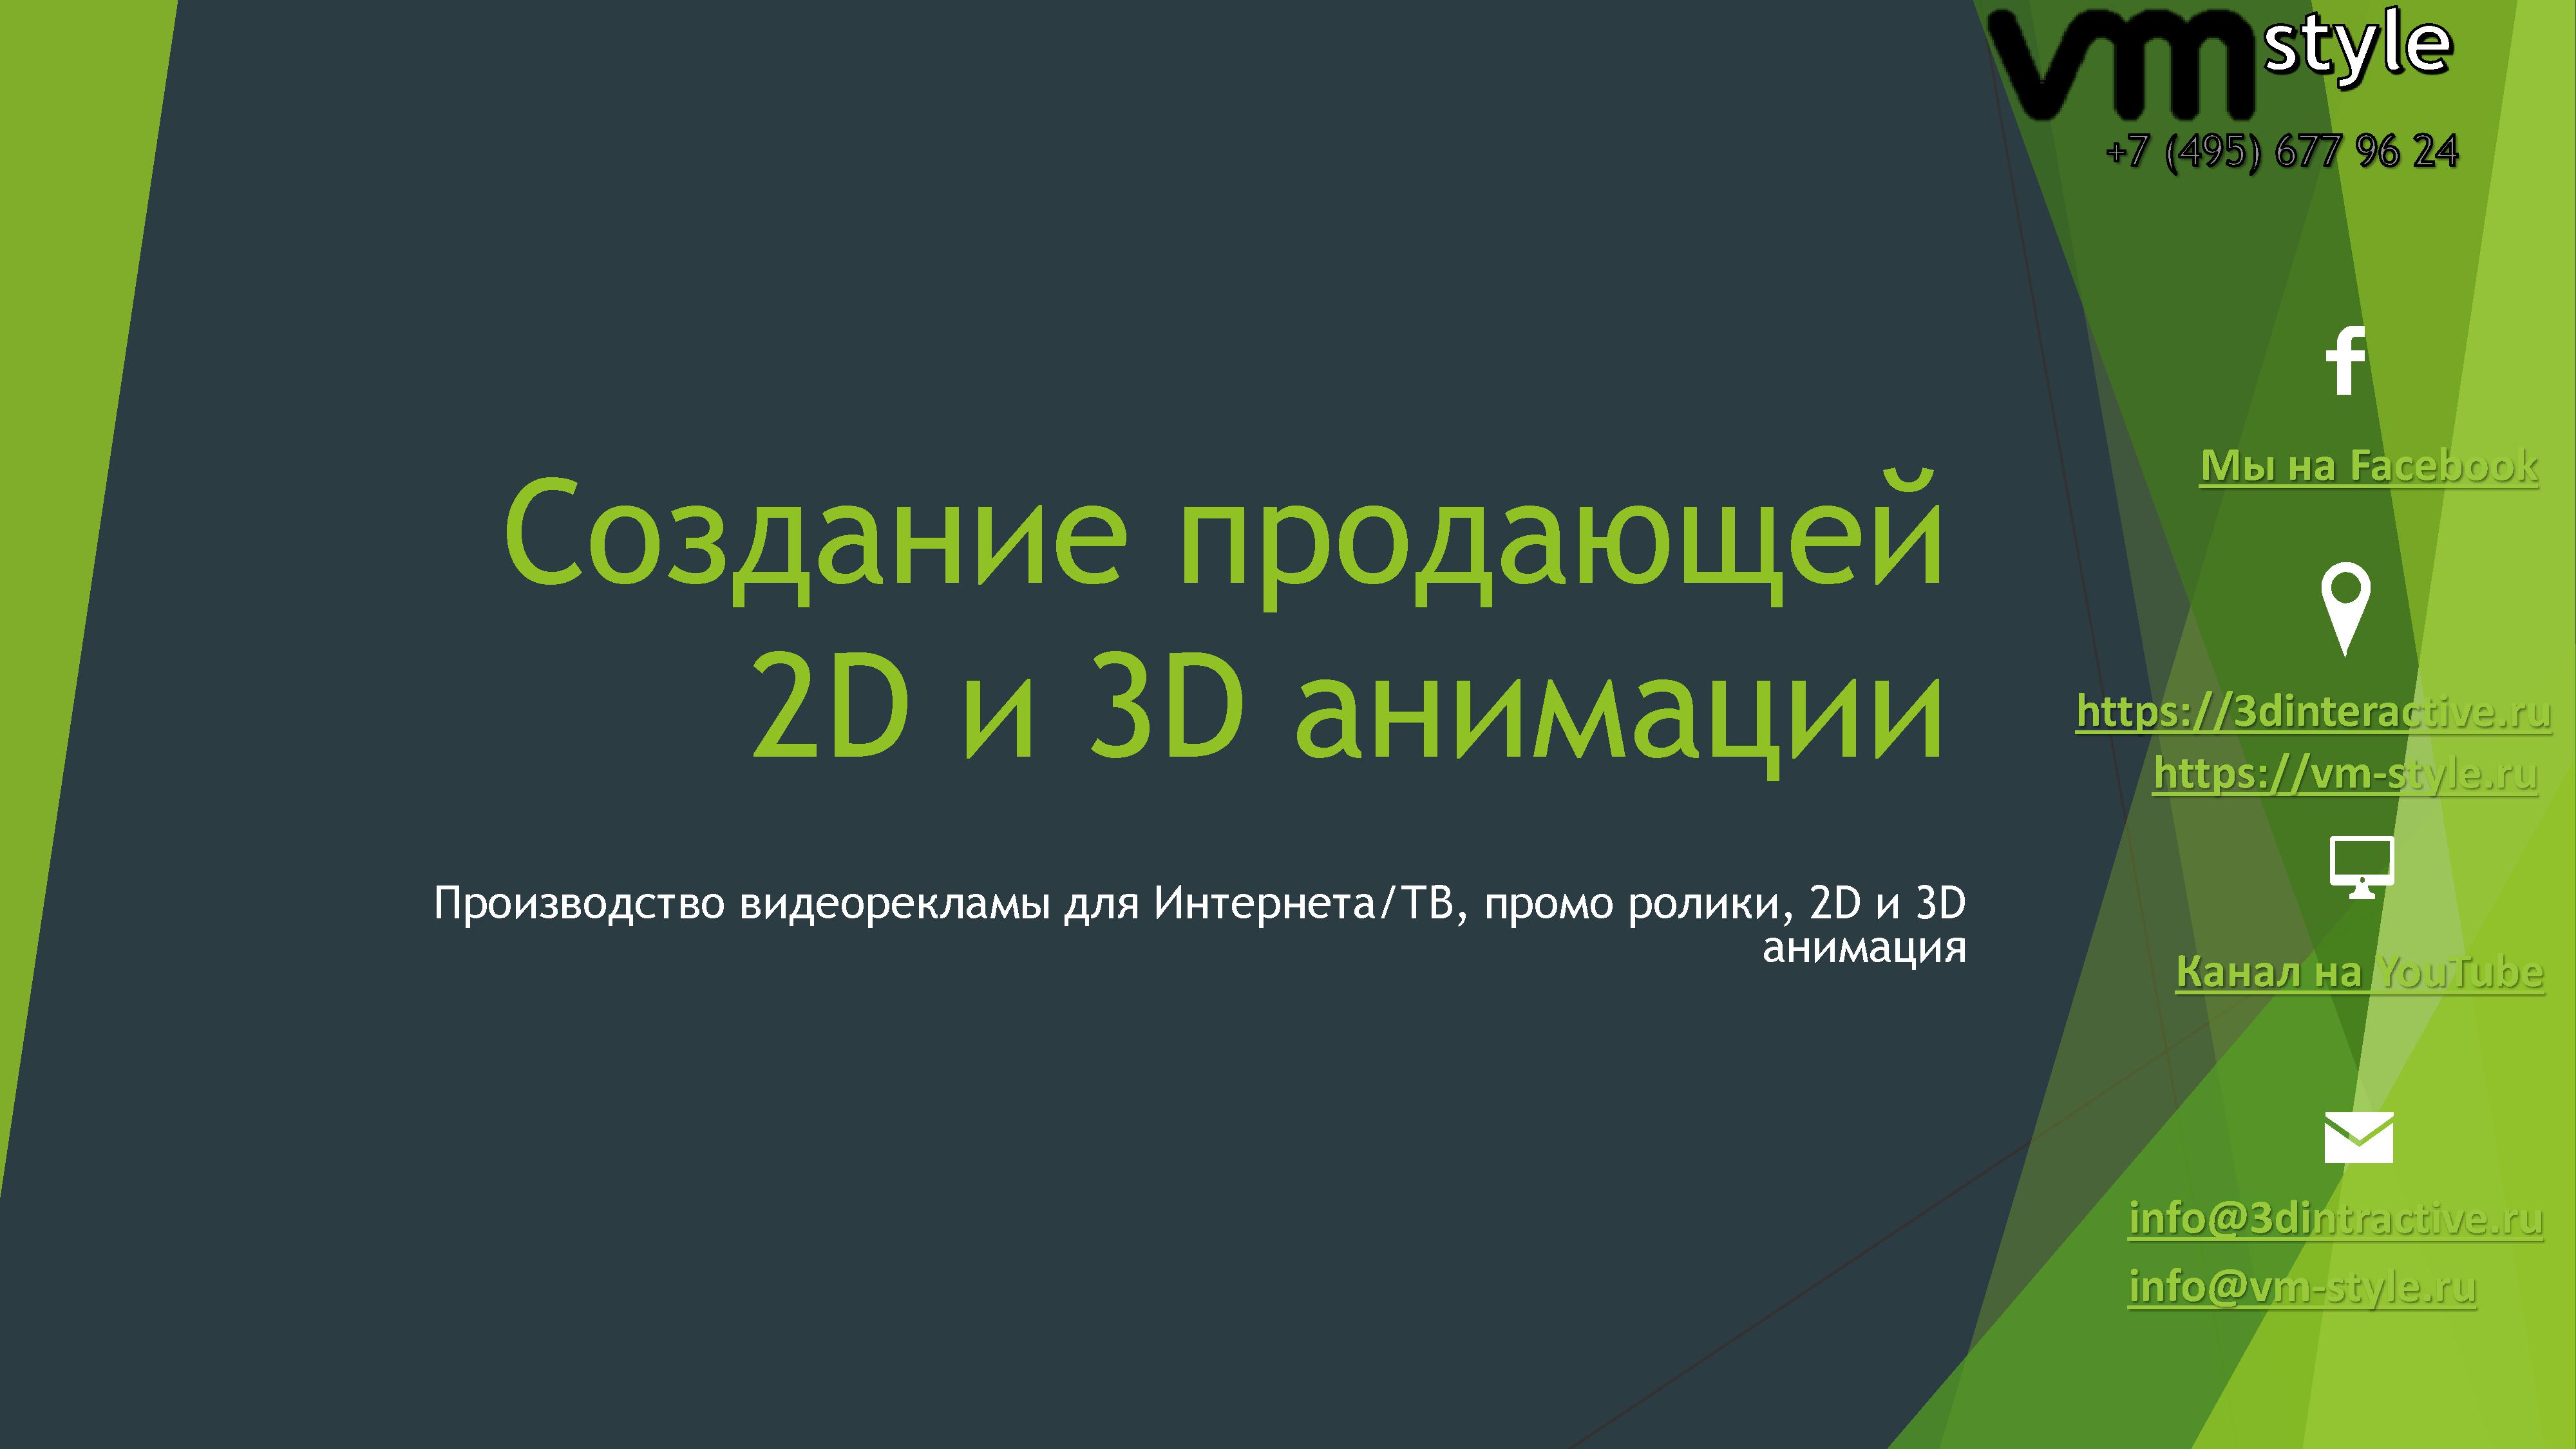 Студия 3D анимации VM style в городе Москва, фото 1, Московская область